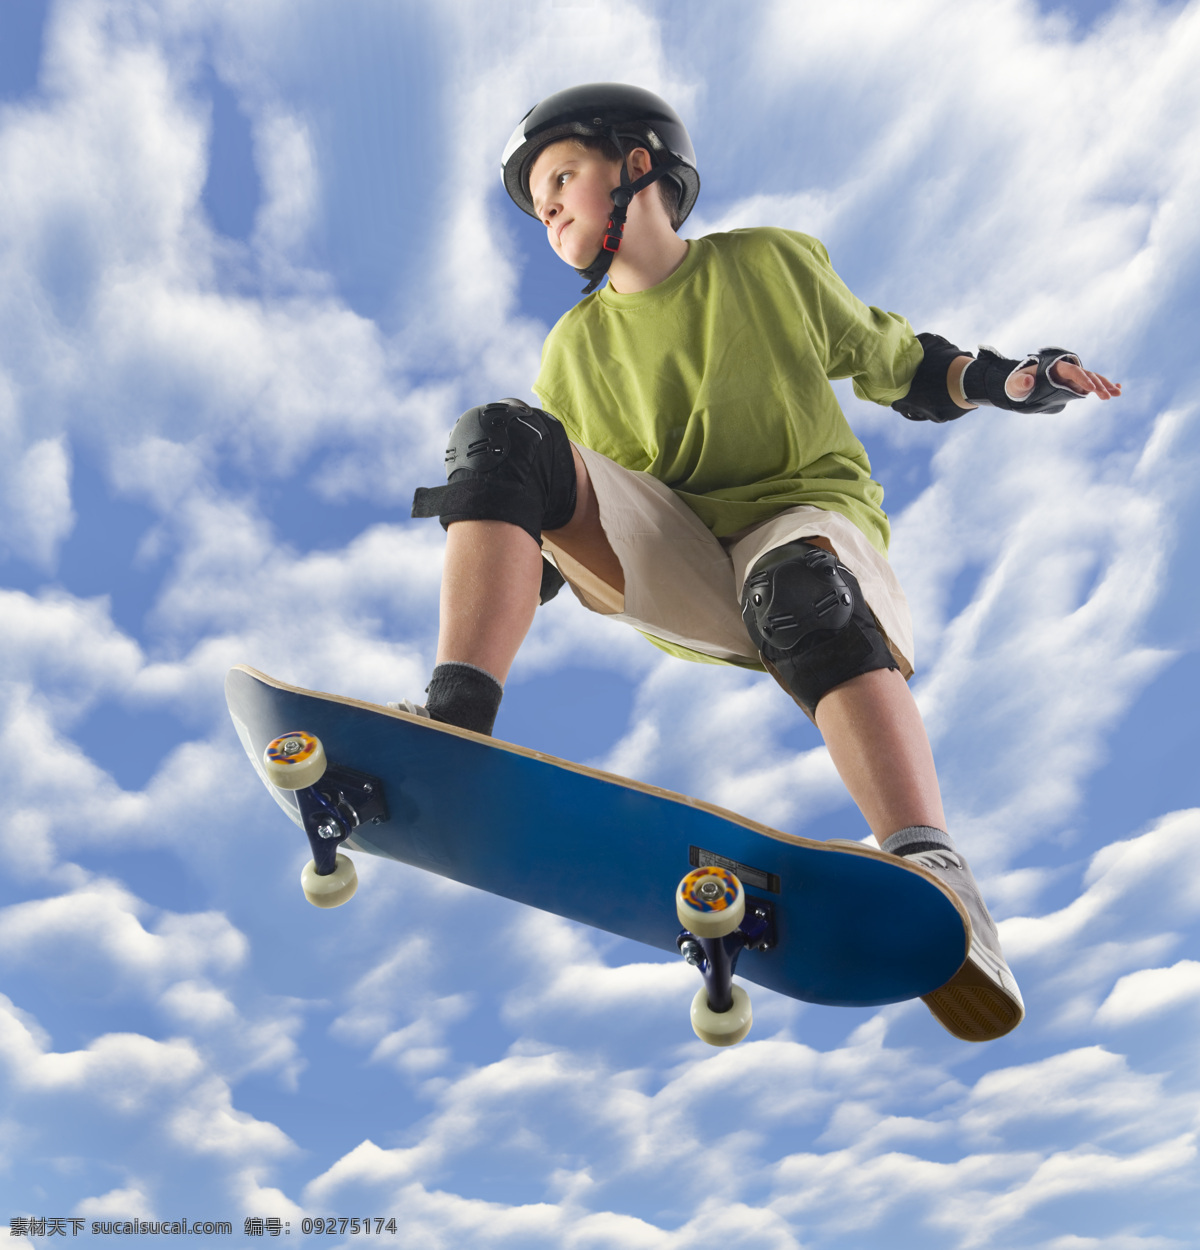 滑板培训 滑板比赛 板速滑 滑板跑酷 滑板旱冰 滑板俱乐部 时尚滑板鞋 玩 街头滑板 儿童滑板 轮滑 跳跃 花样滑板 个性运动 极限运动 休闲活动 女生滑板 男生滑板 滑板爱好 文化艺术 体育运动